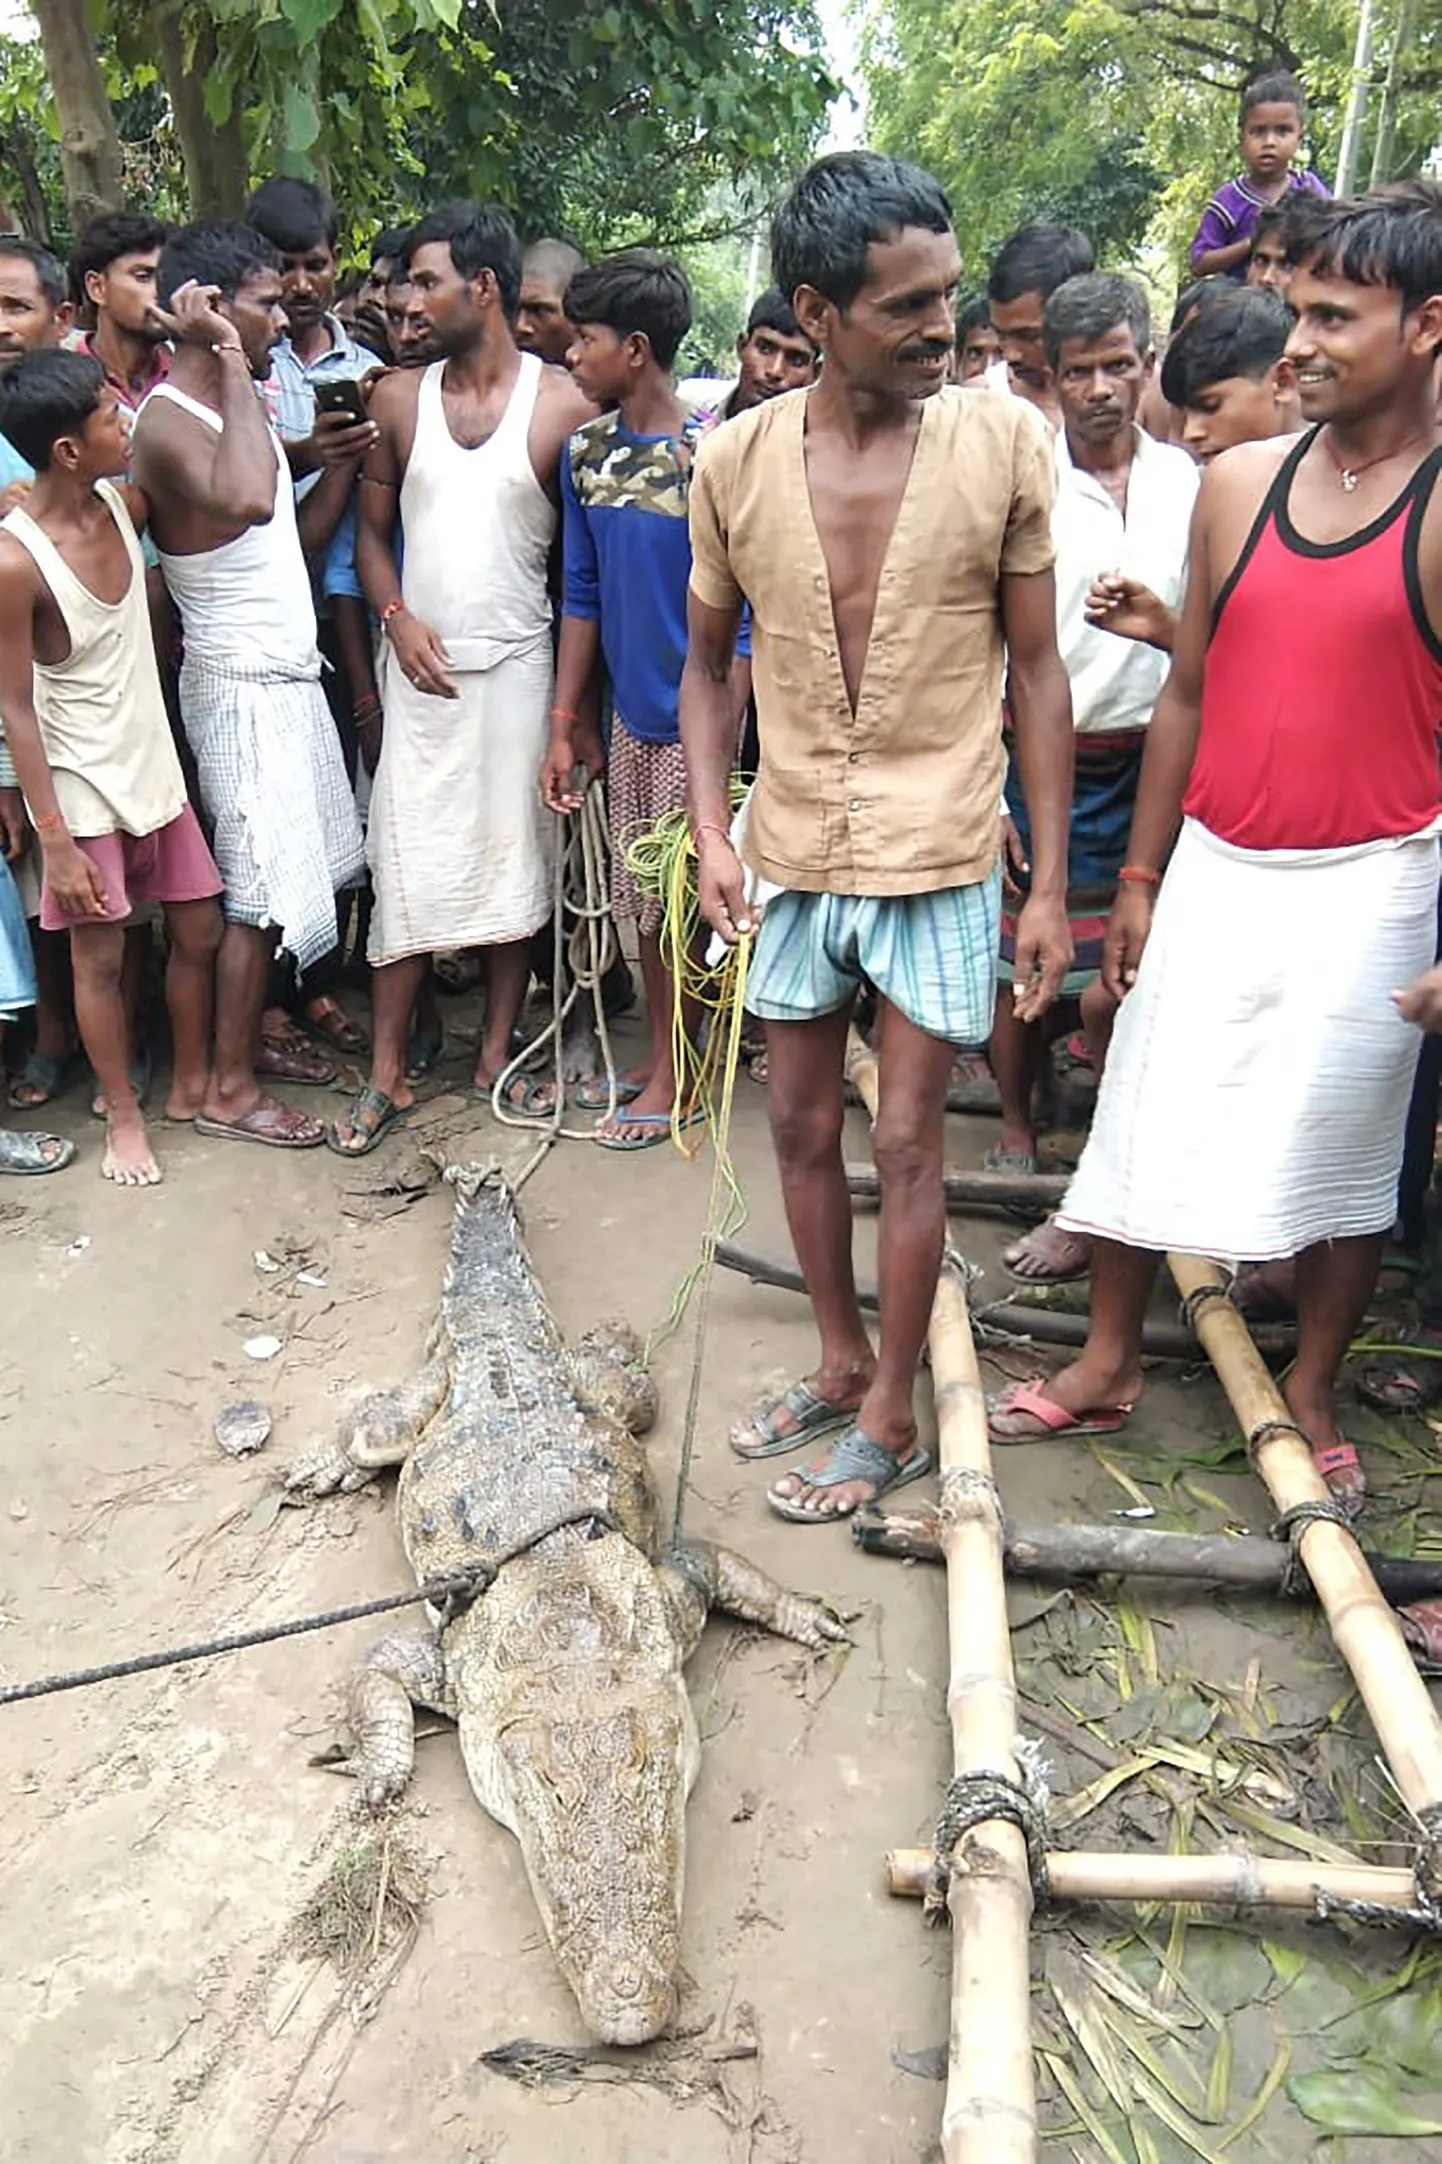 India põhjaosas Uttari osariigis Mdania külas kinni võetud krokodill.